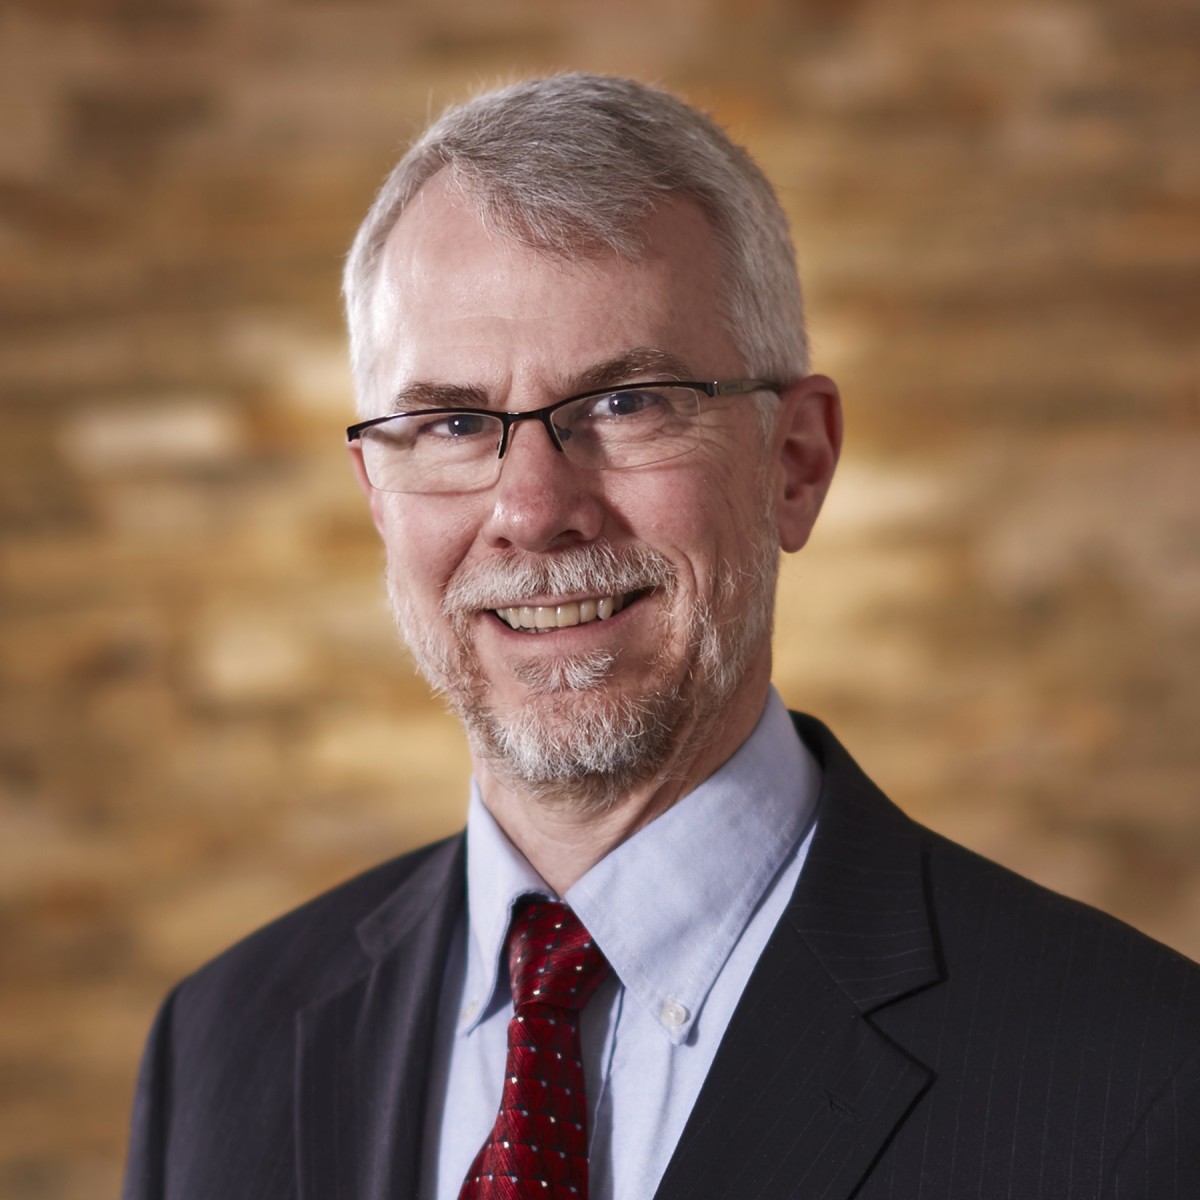 Doug Gjerde, MBA, CFP® is Managing Partner, Wealth Advisor of Heritage Financial Partners, and is a member of Ed Slott’s Elite IRA Advisor Group.